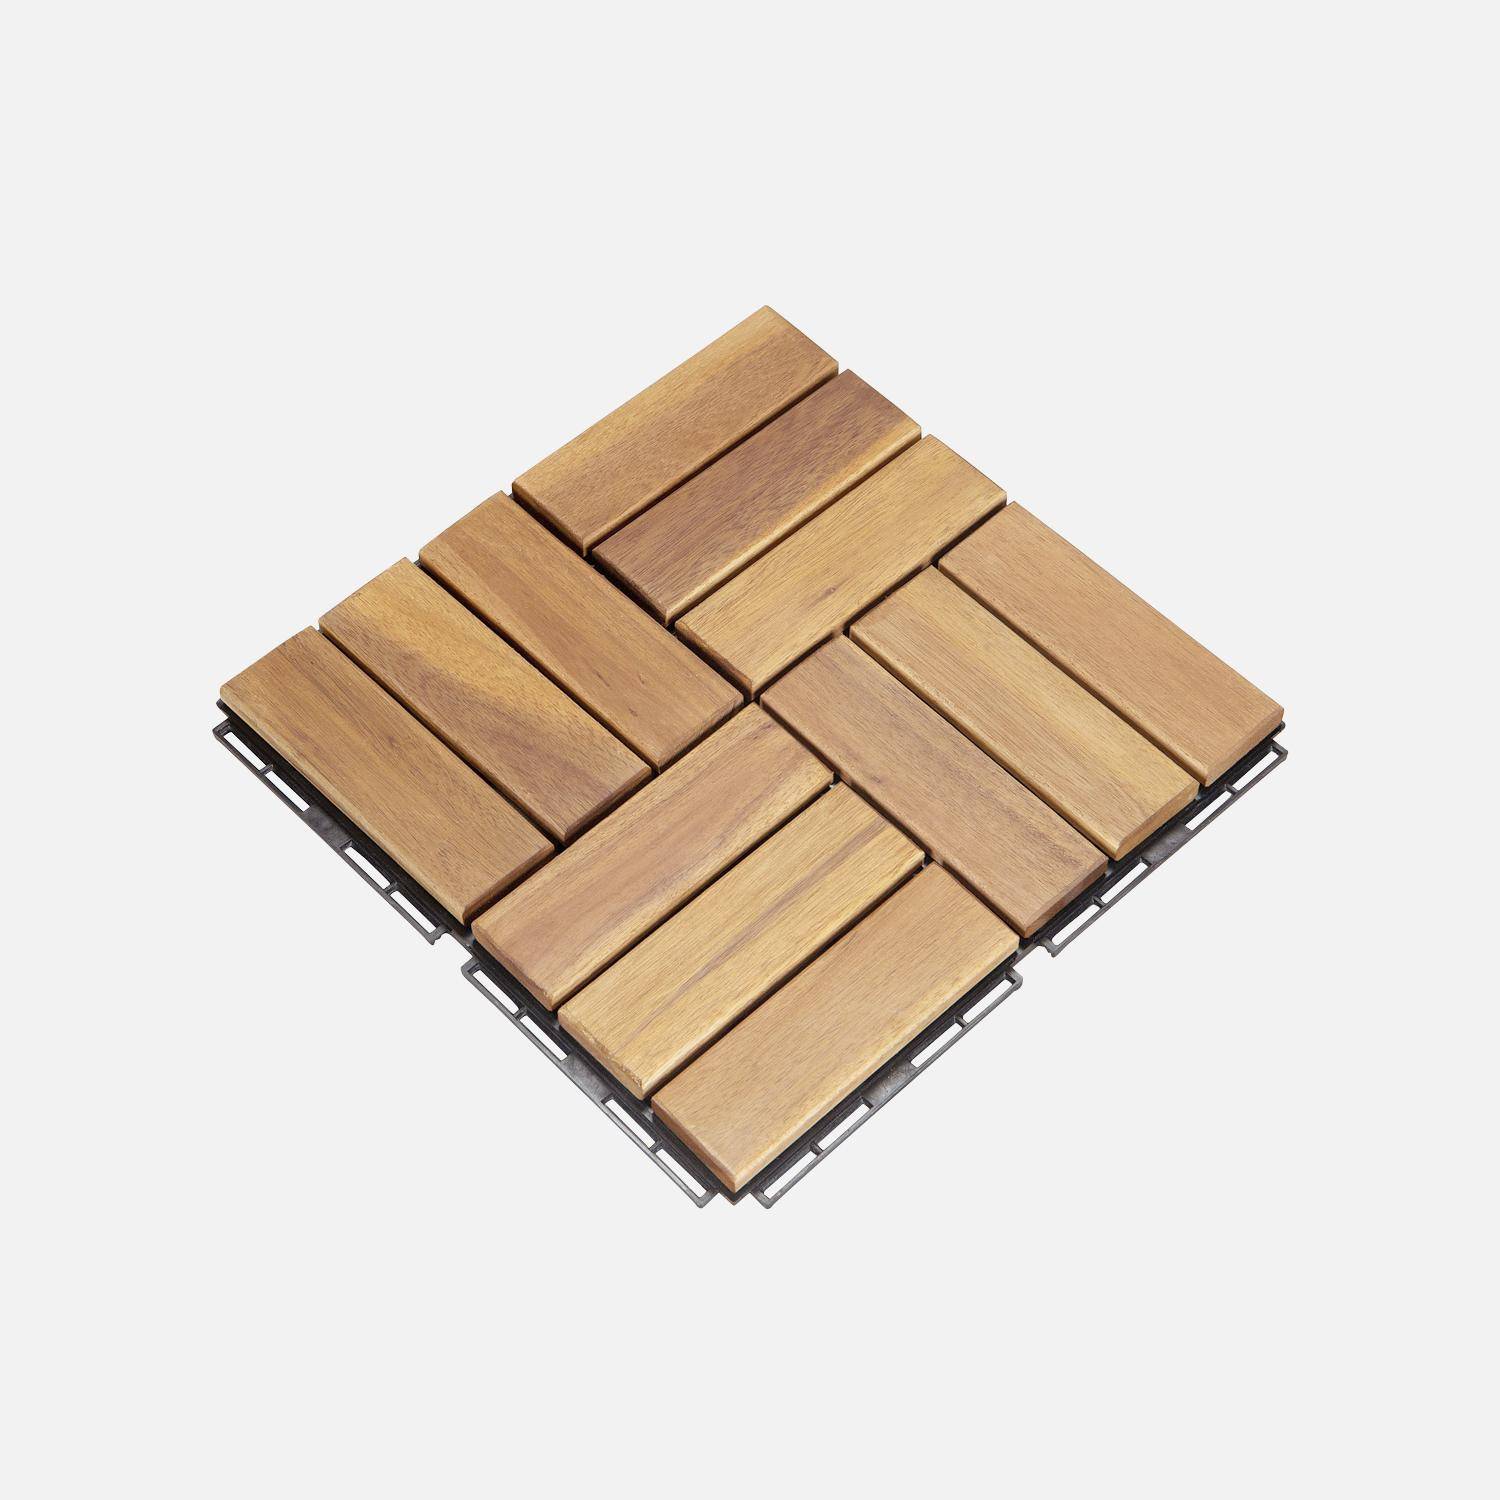 Lote de 36 ladrilhos de madeira de acácia para decks 30x30cm, padrão quadrado, encaixáveis Photo2